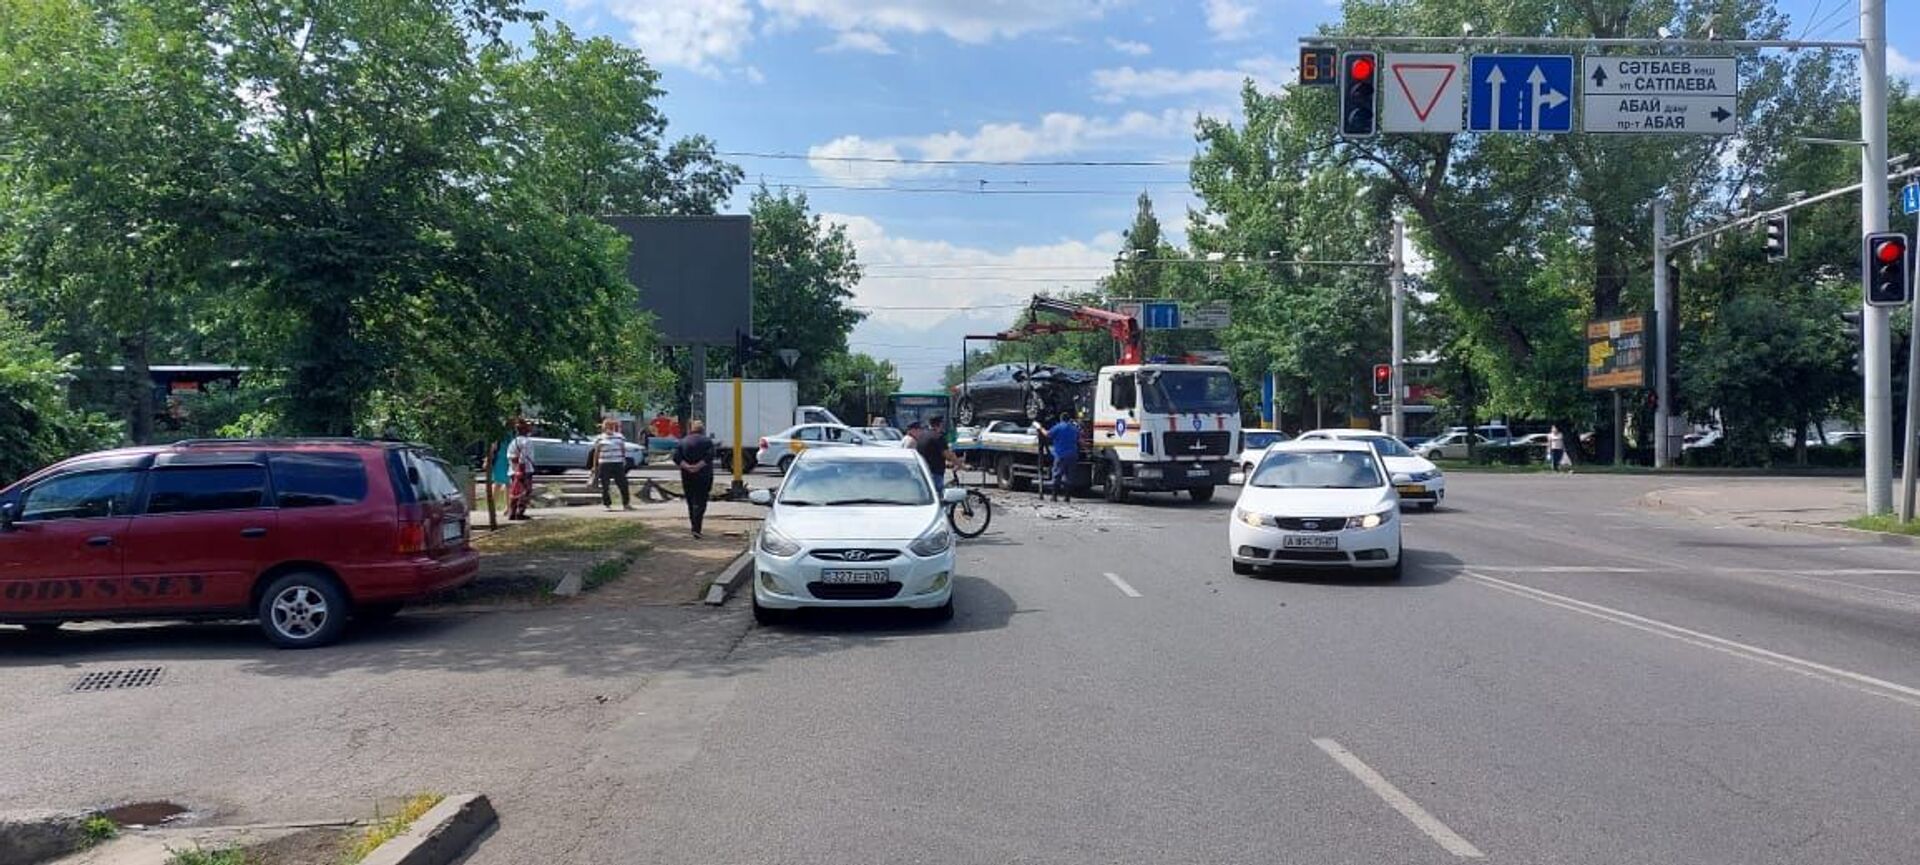 Иномарка сбила пешехода и врезалась в автобус в Алматы: пострадали шесть человек - Sputnik Казахстан, 1920, 13.06.2021